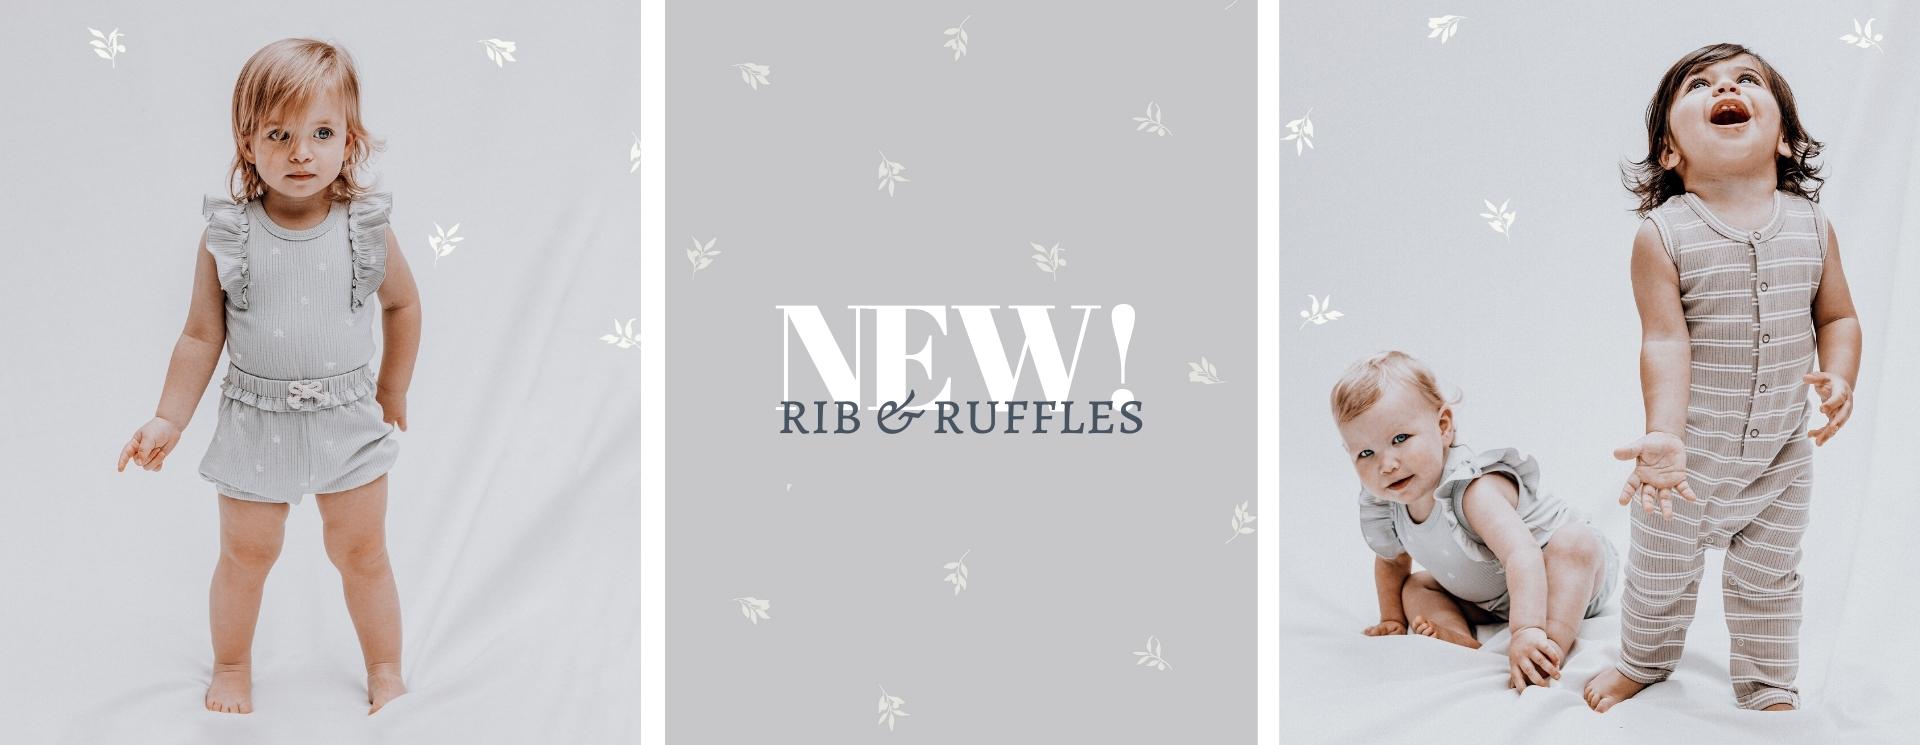 NEW RIB AND RUFFELS